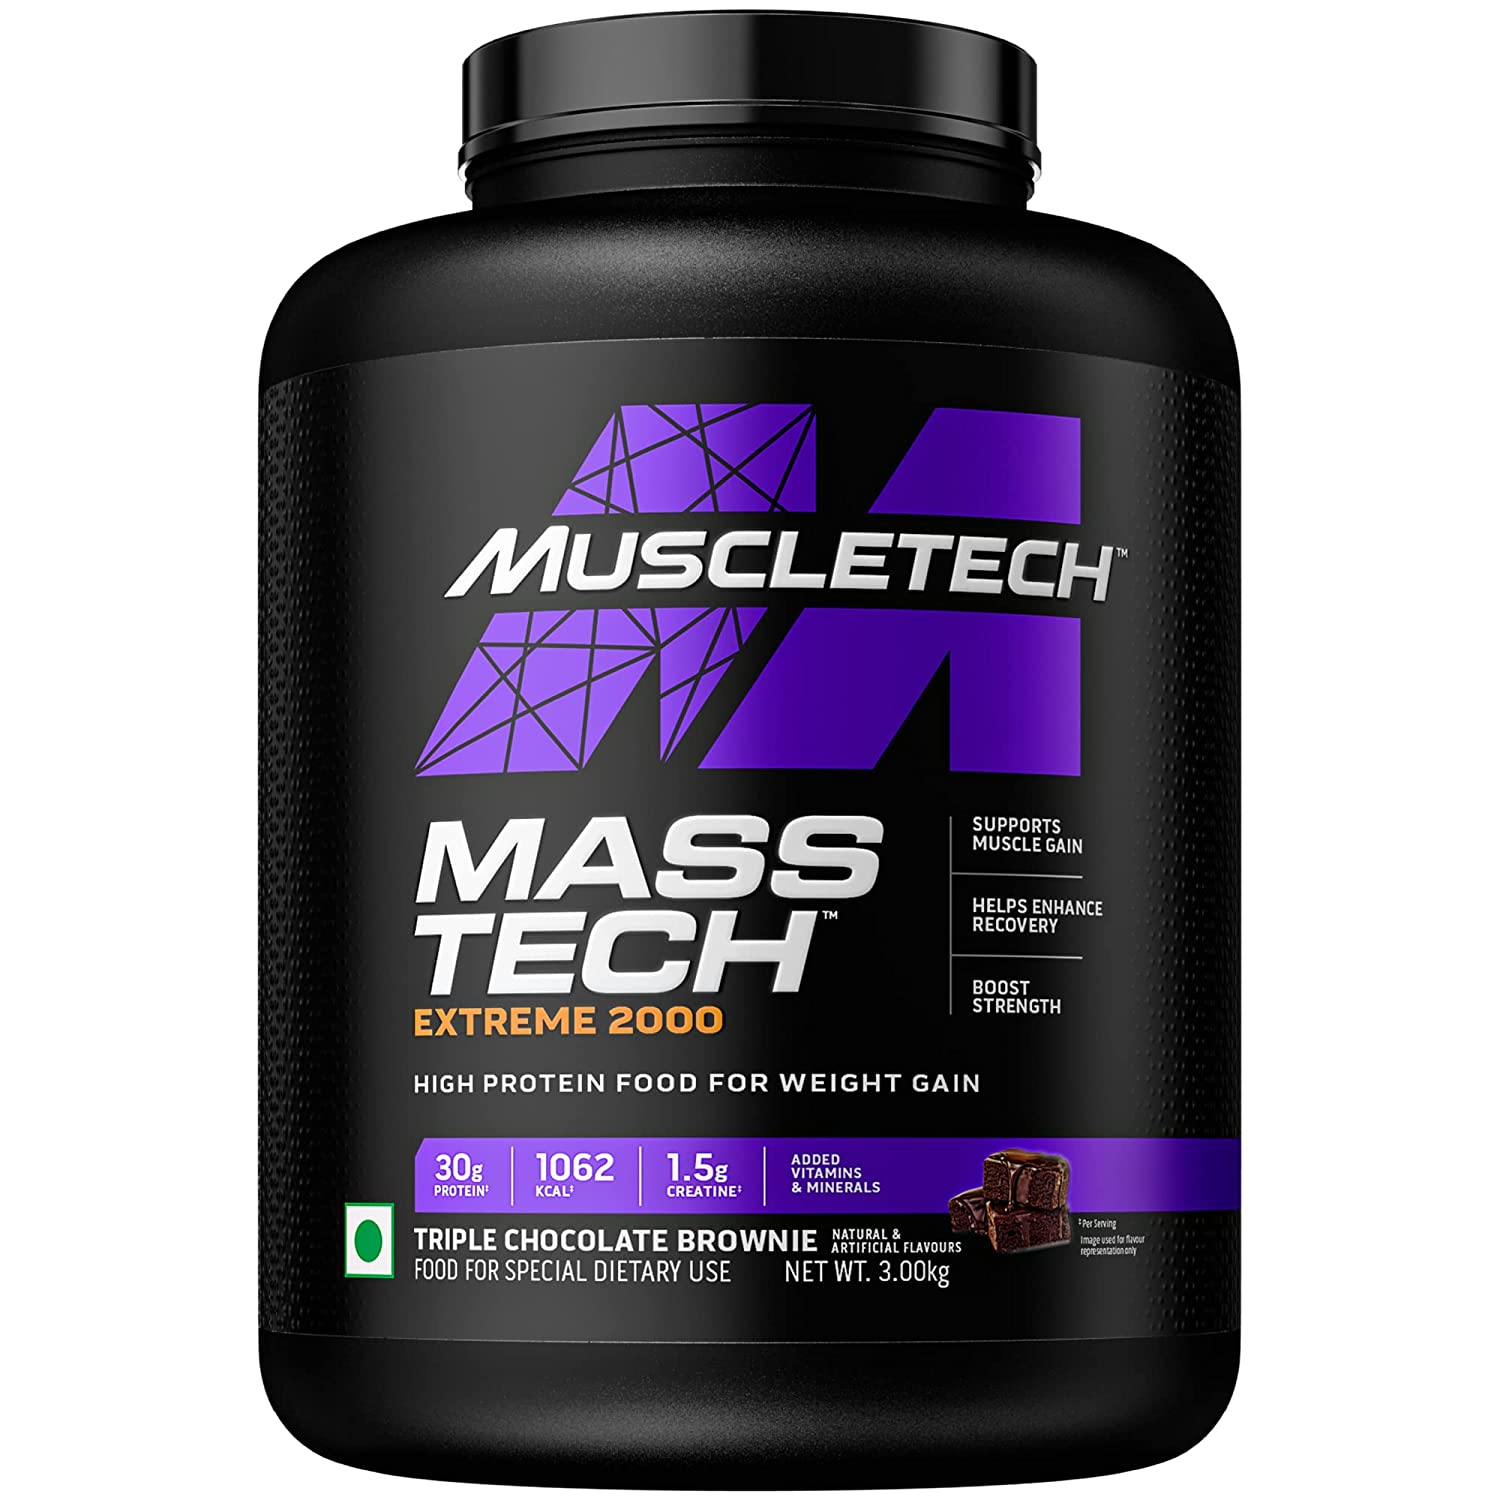 MuscleTech MassTech Extreme 2000 High Protein